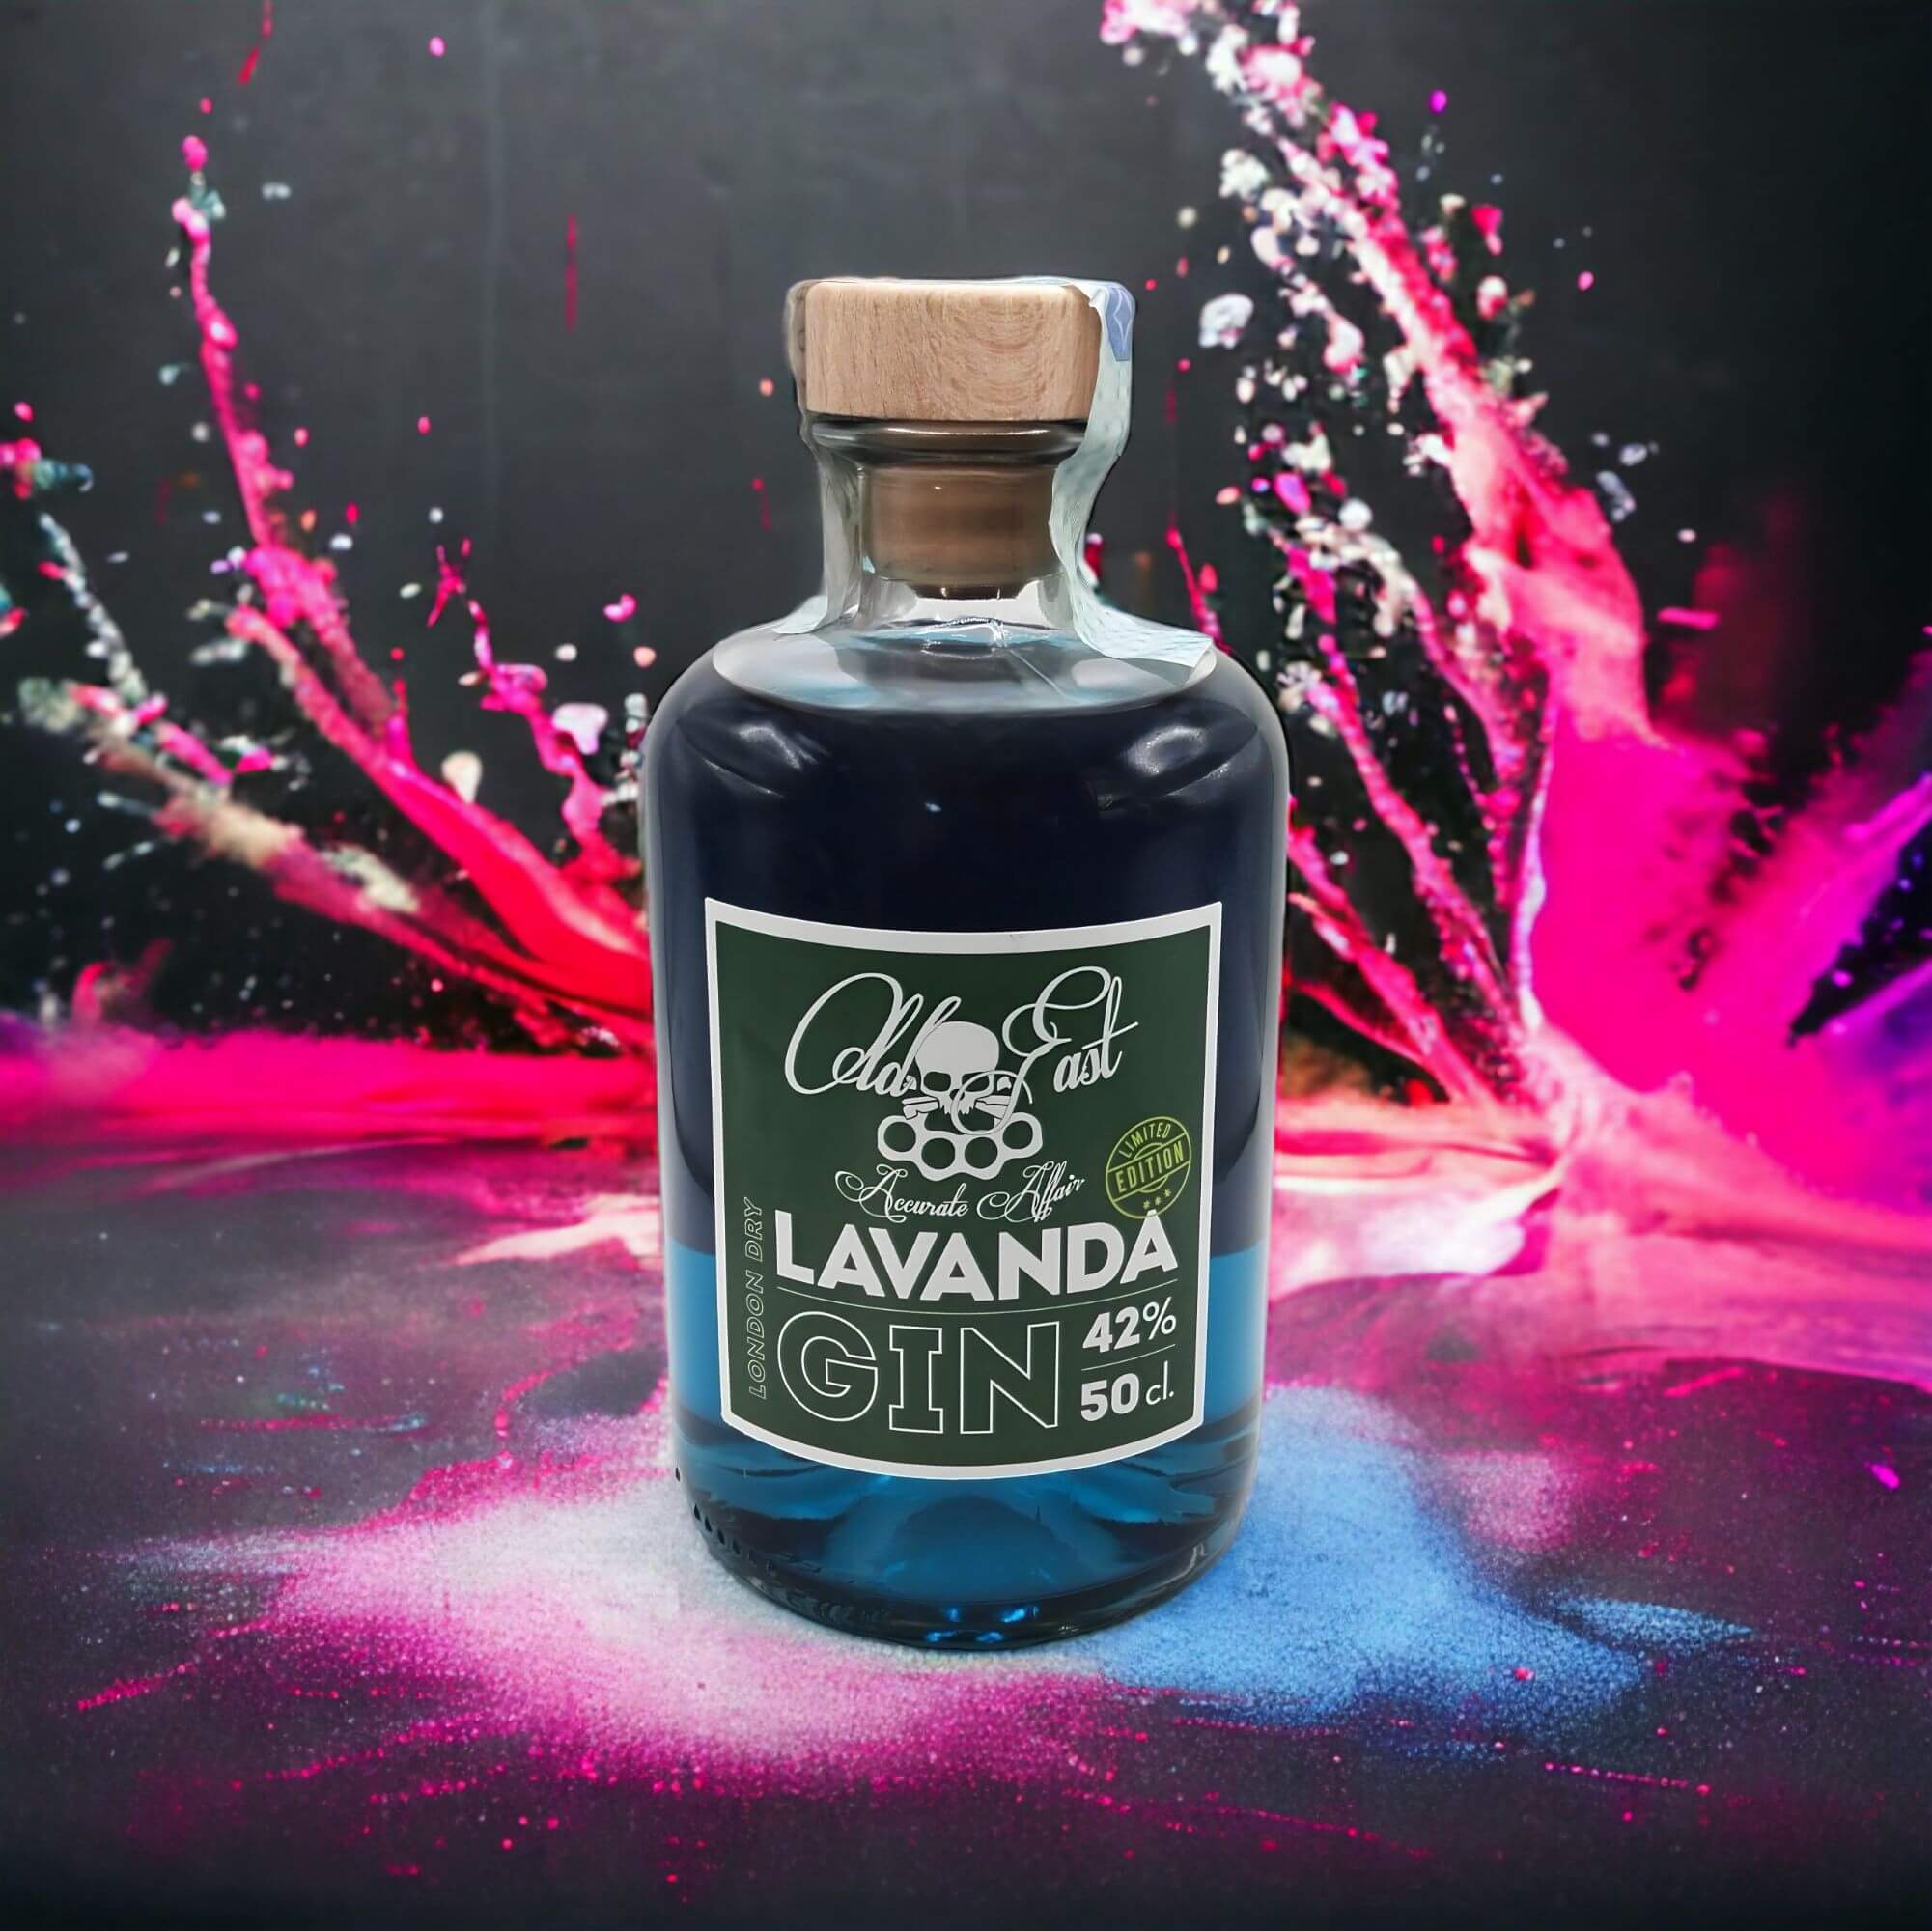 Made in Italy - Lavanda Gin